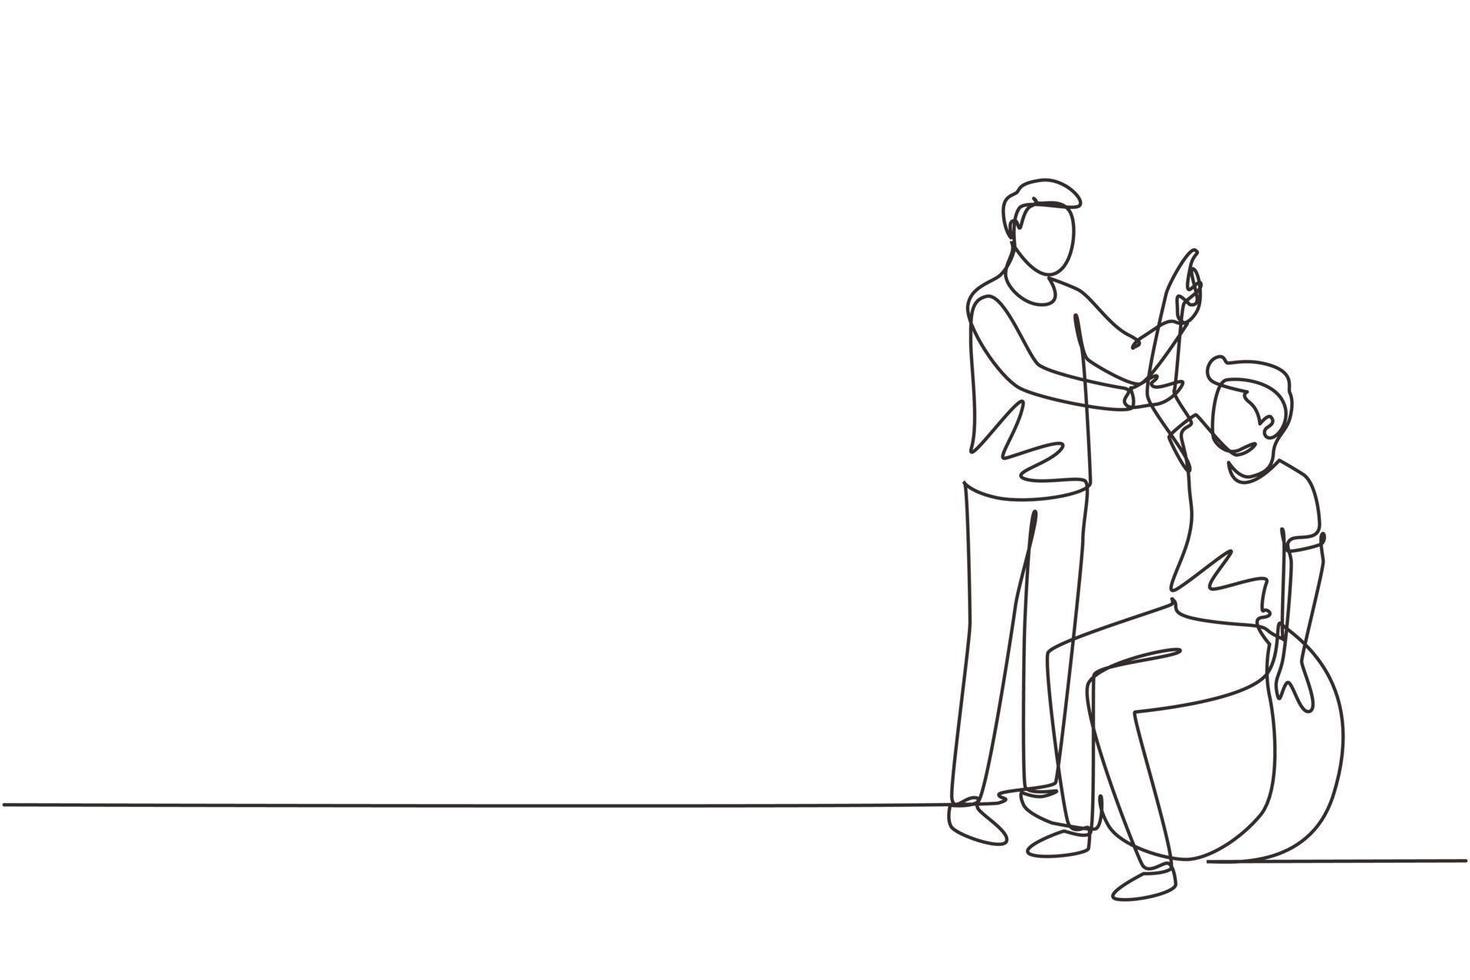 composición isométrica de rehabilitación de fisioterapia de dibujo continuo de una línea con un paciente joven sentado en la pelota y un médico varón sosteniendo su mano. ilustración de vector de diseño de dibujo de una sola línea